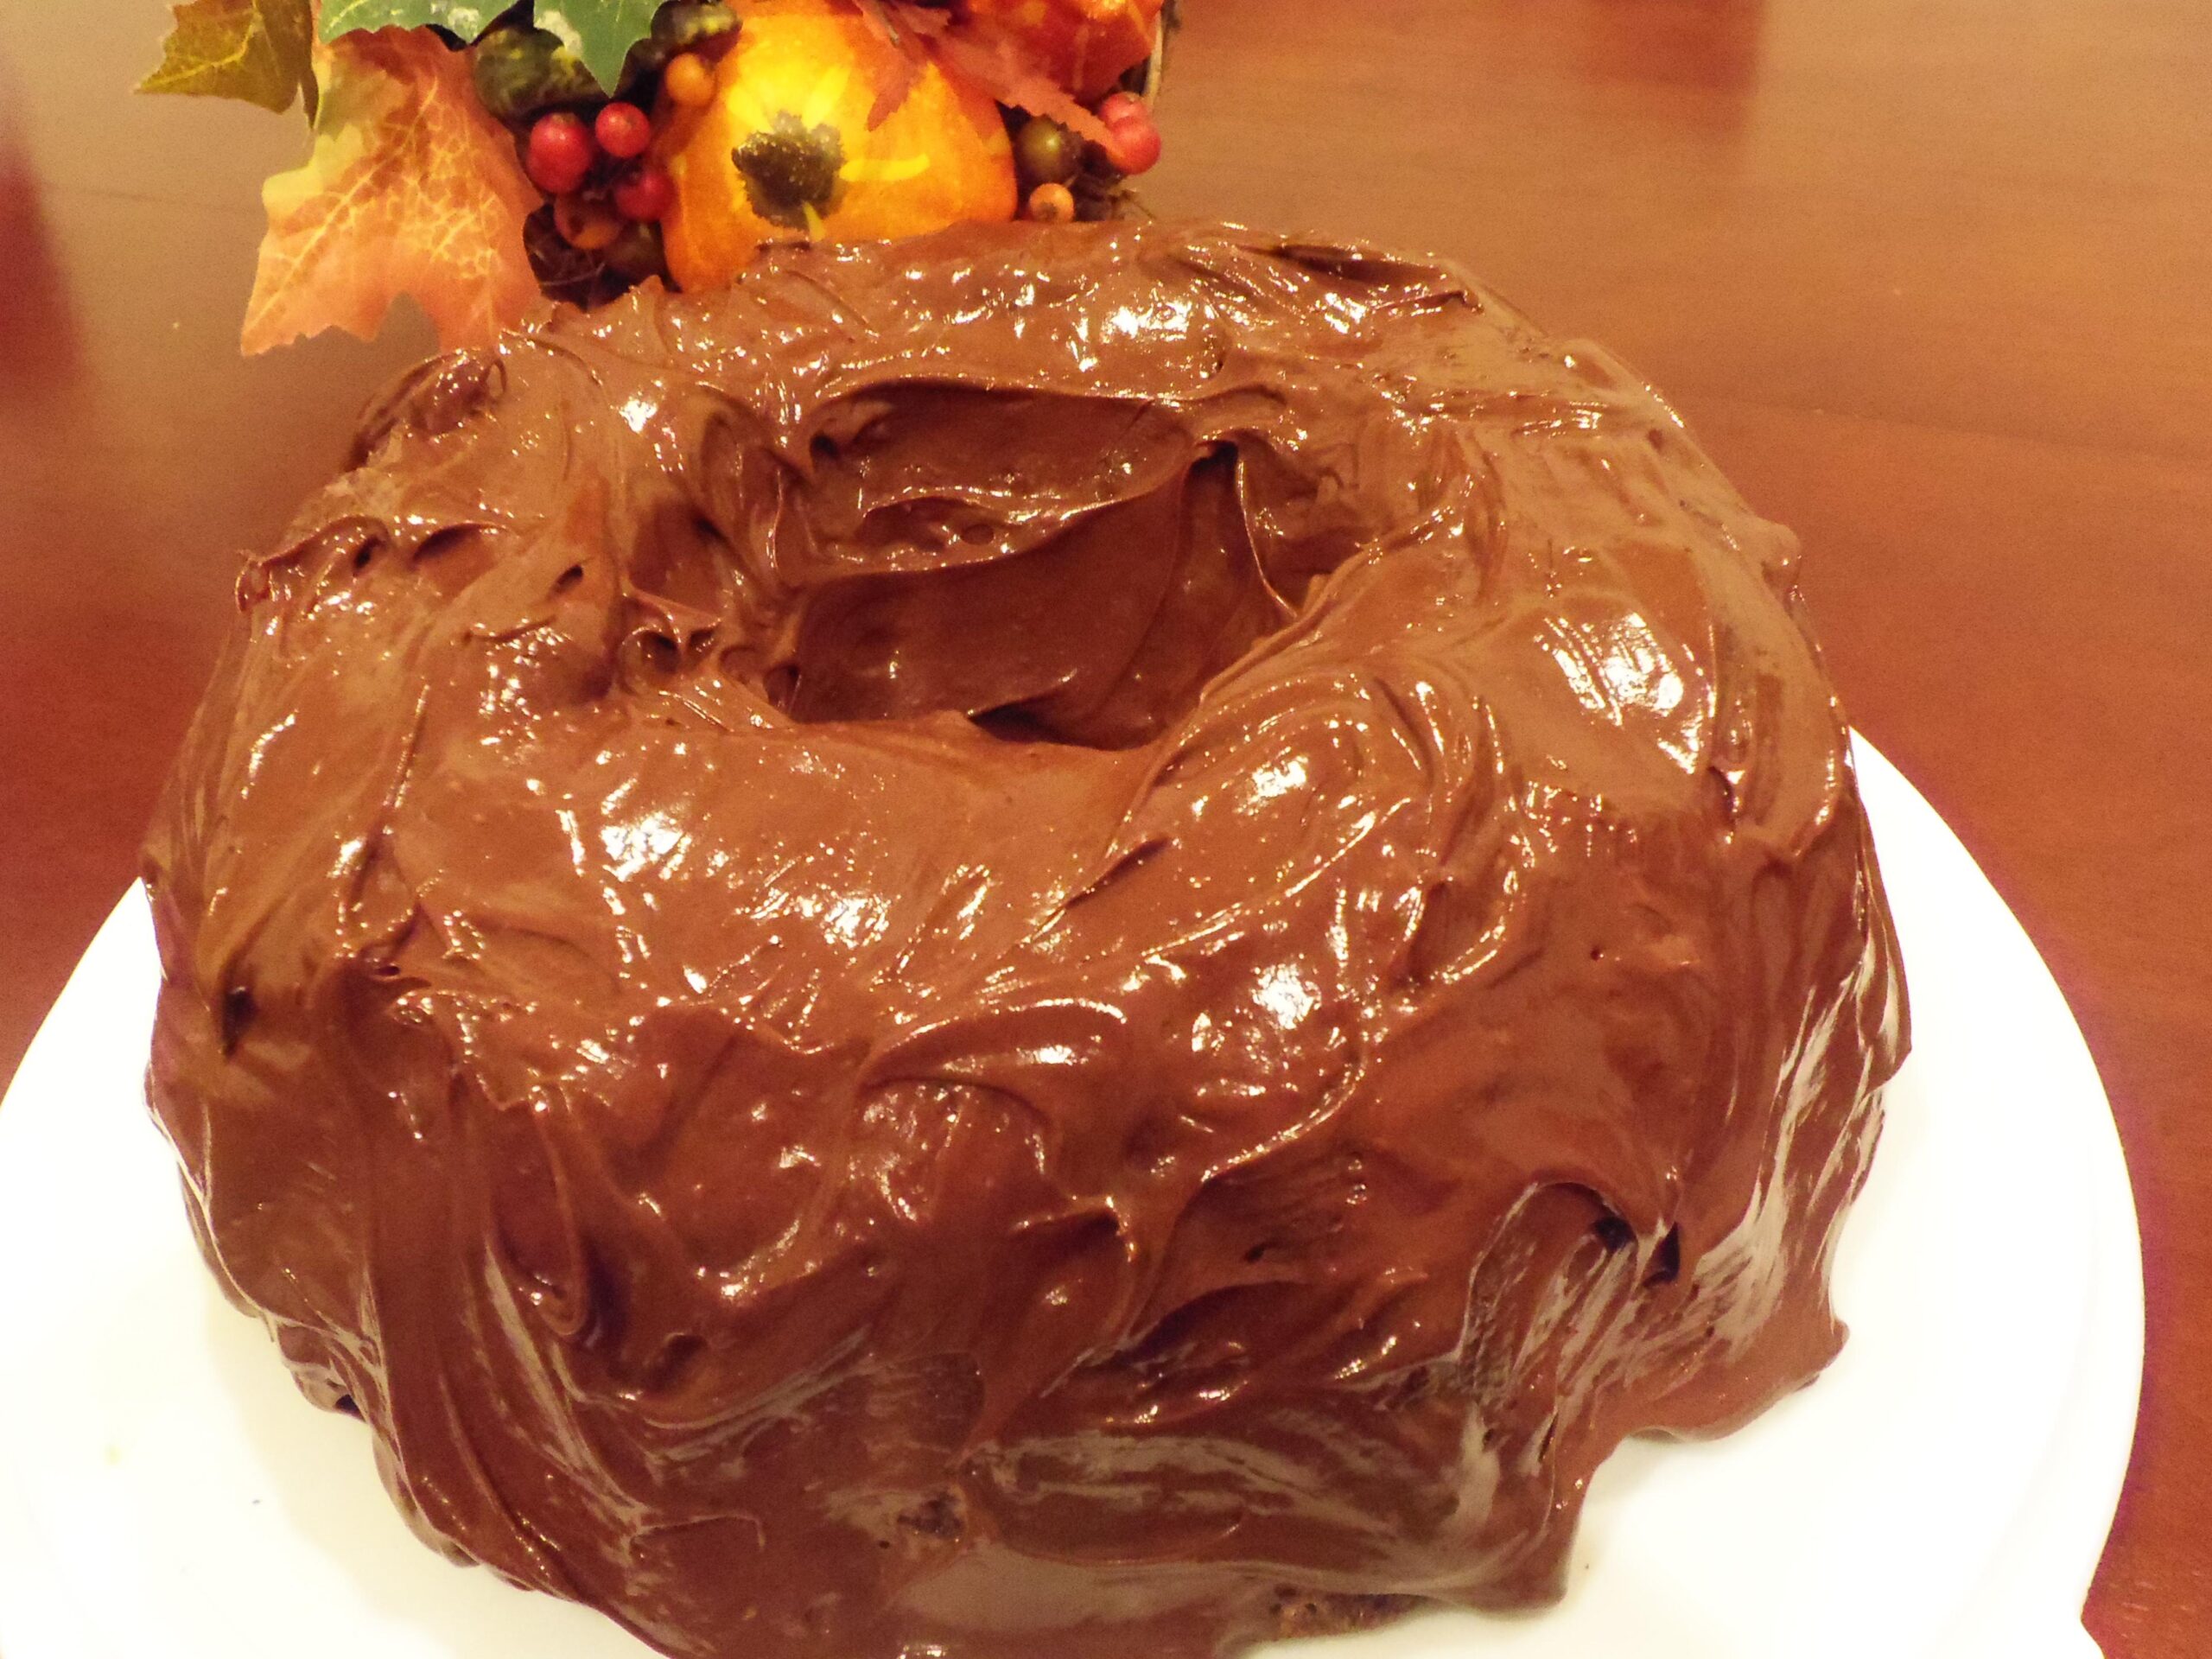 Chocolate Pound Cake With Chocolate Glaze